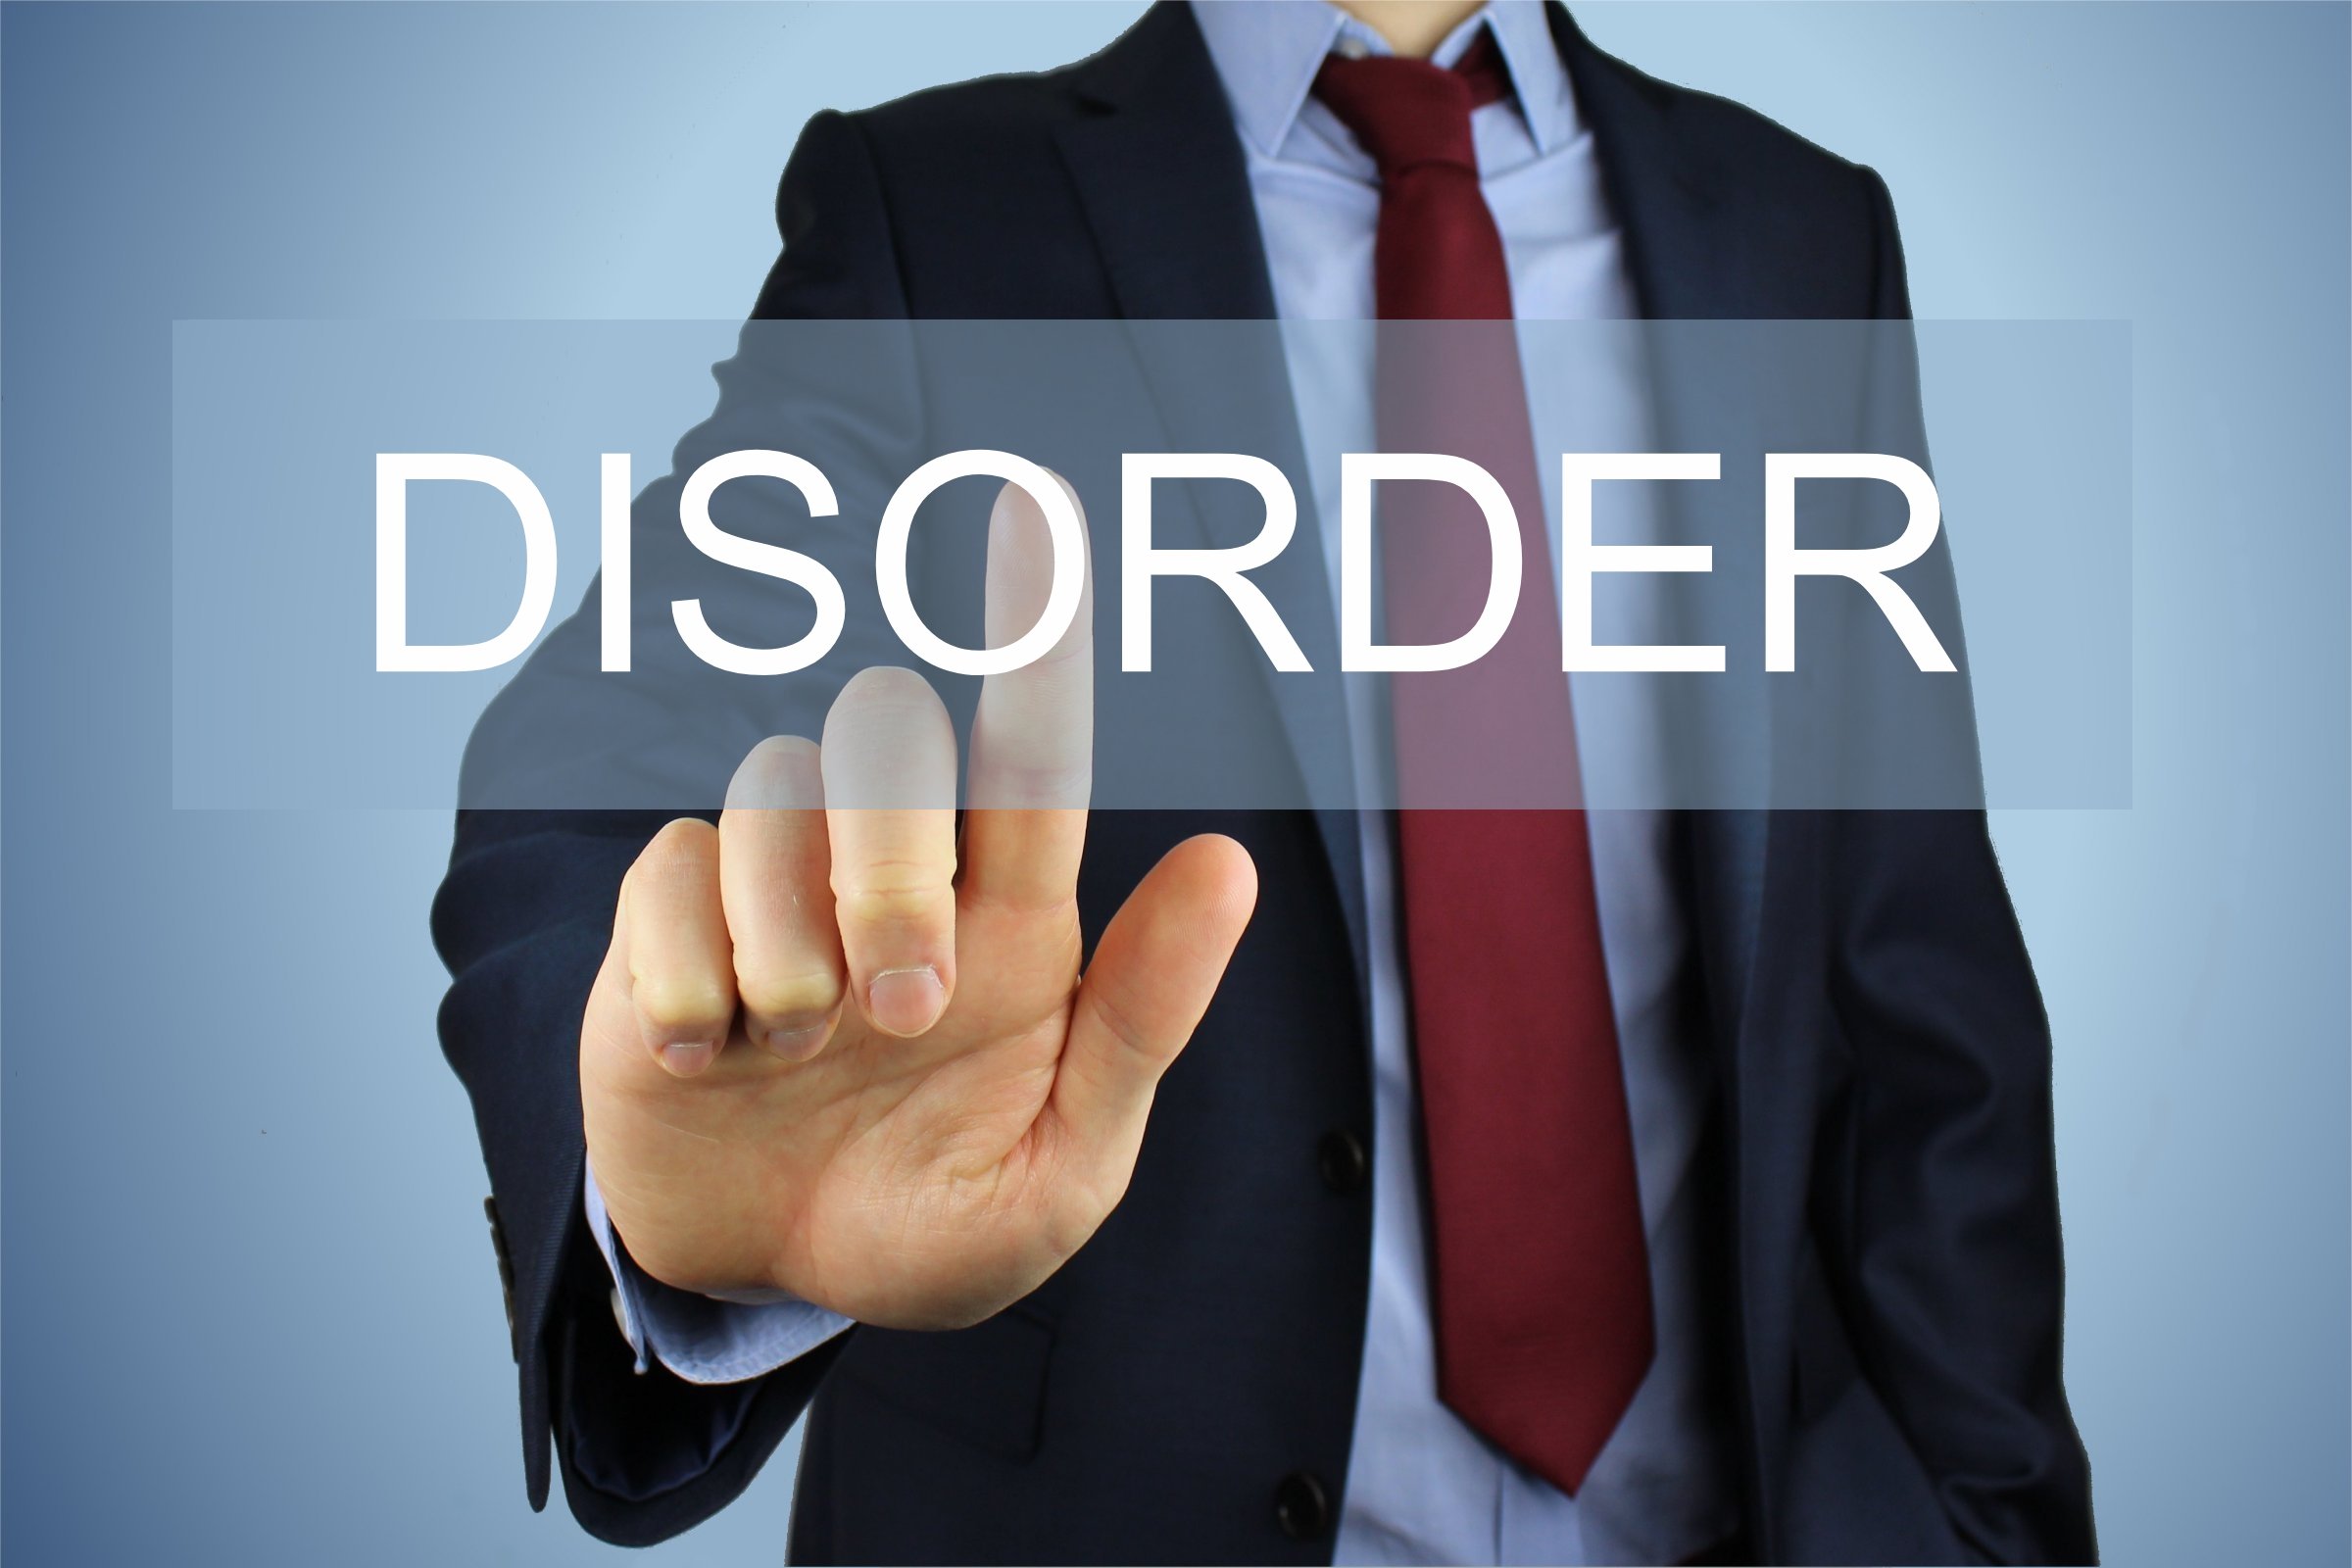 disorder